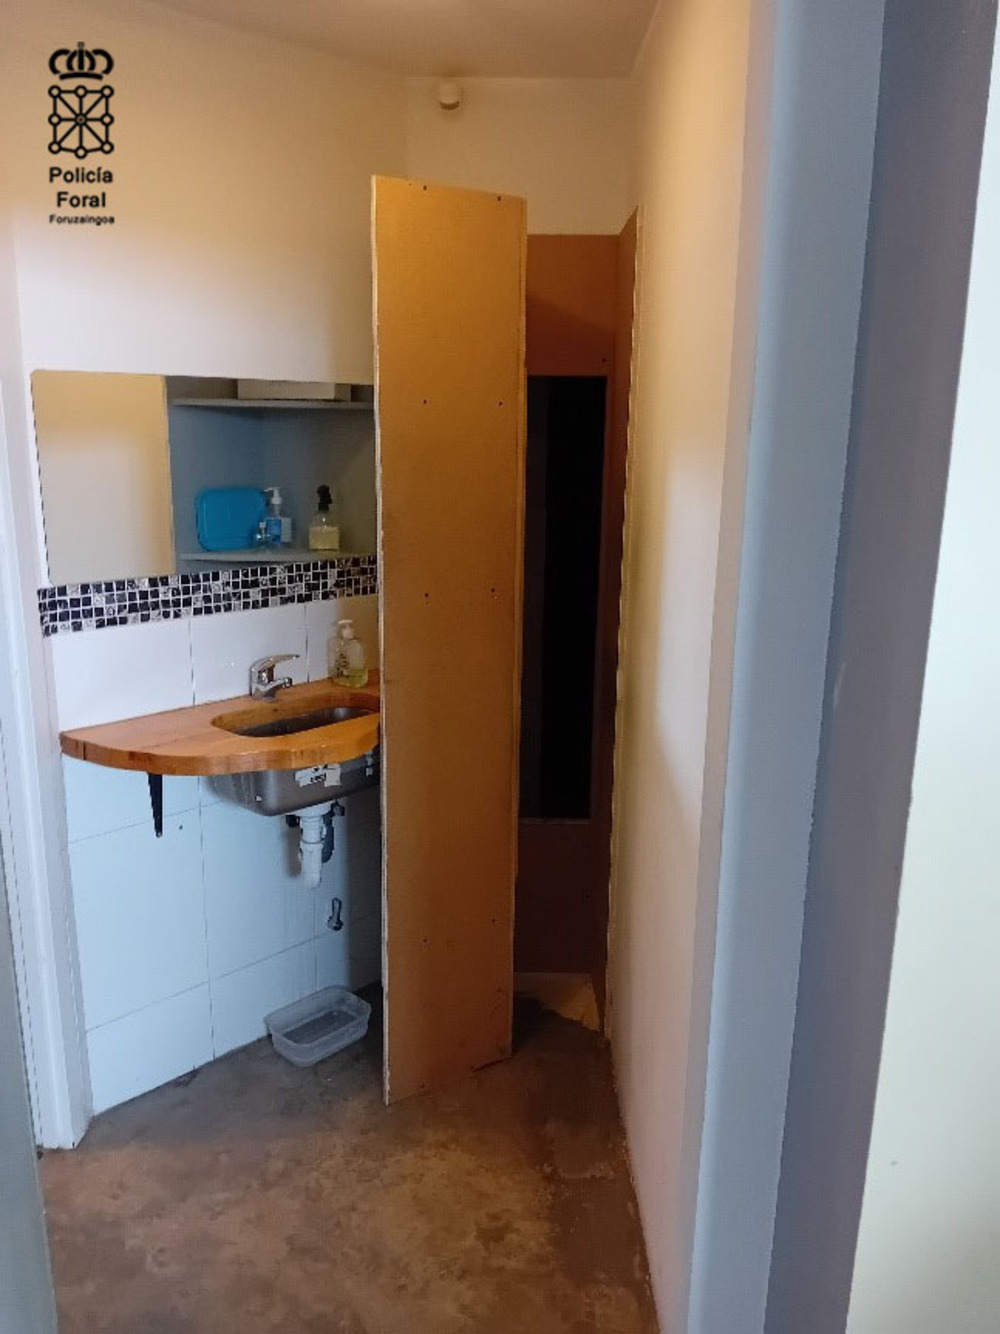 Un armario en el baño que oculta un acceso a otro zulo